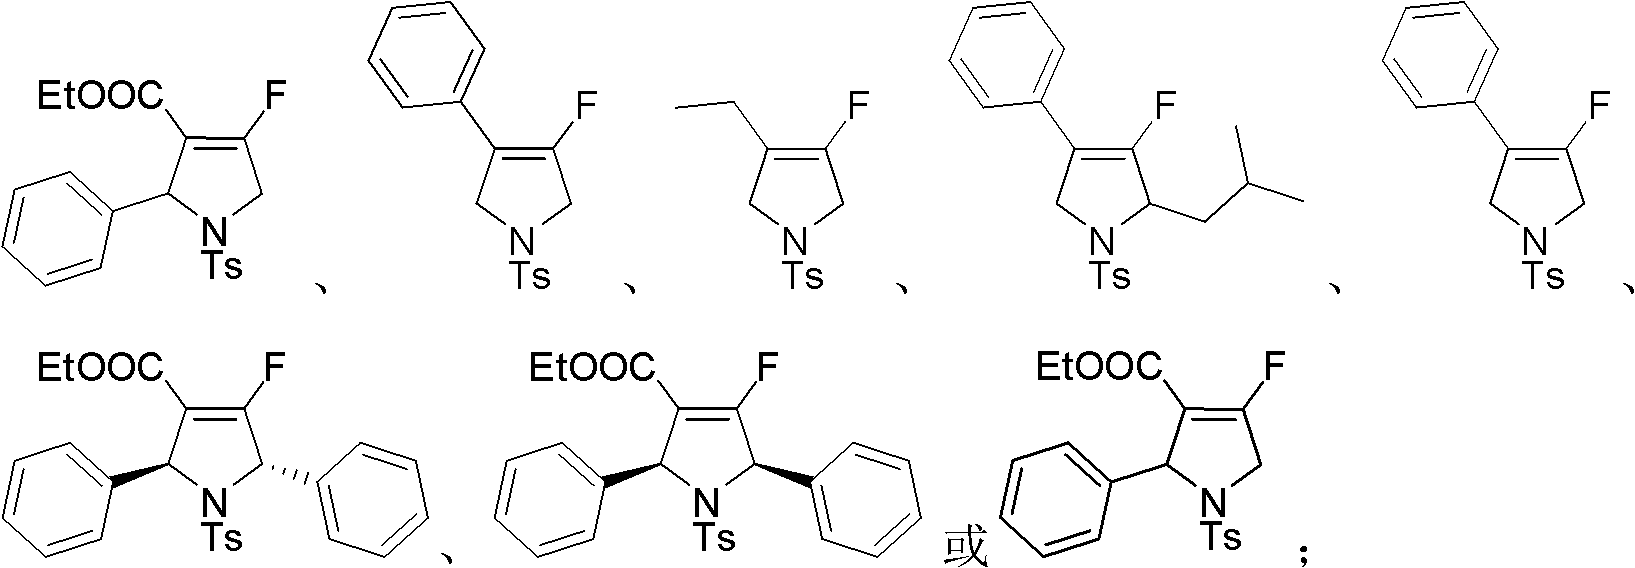 Fluoro dihydropyrrole or fluoro pyrrole